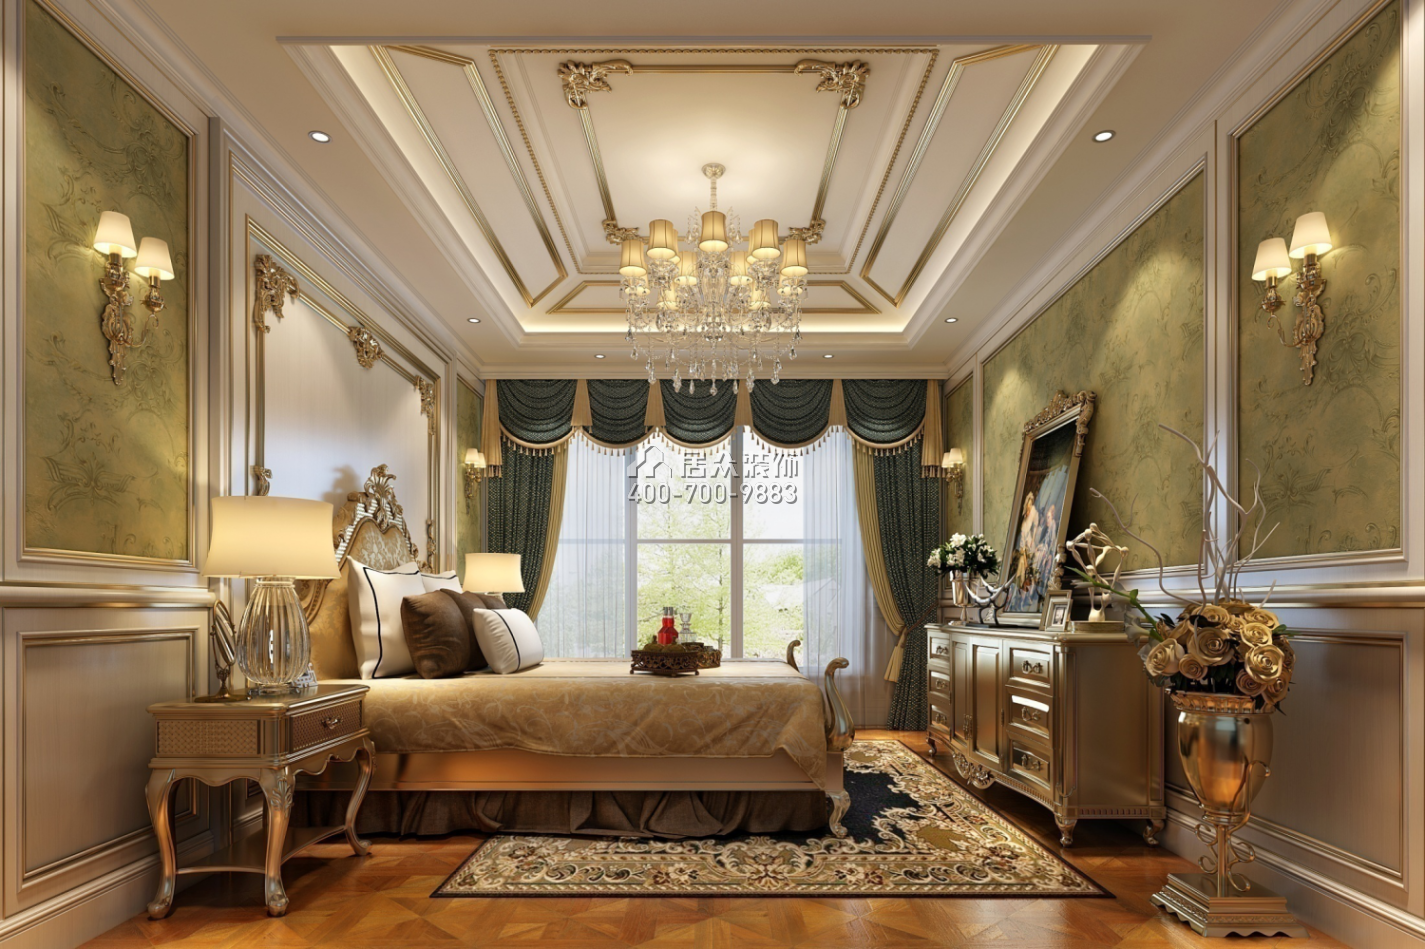 北濱一號420平方米新古典風格別墅戶型臥室裝修效果圖